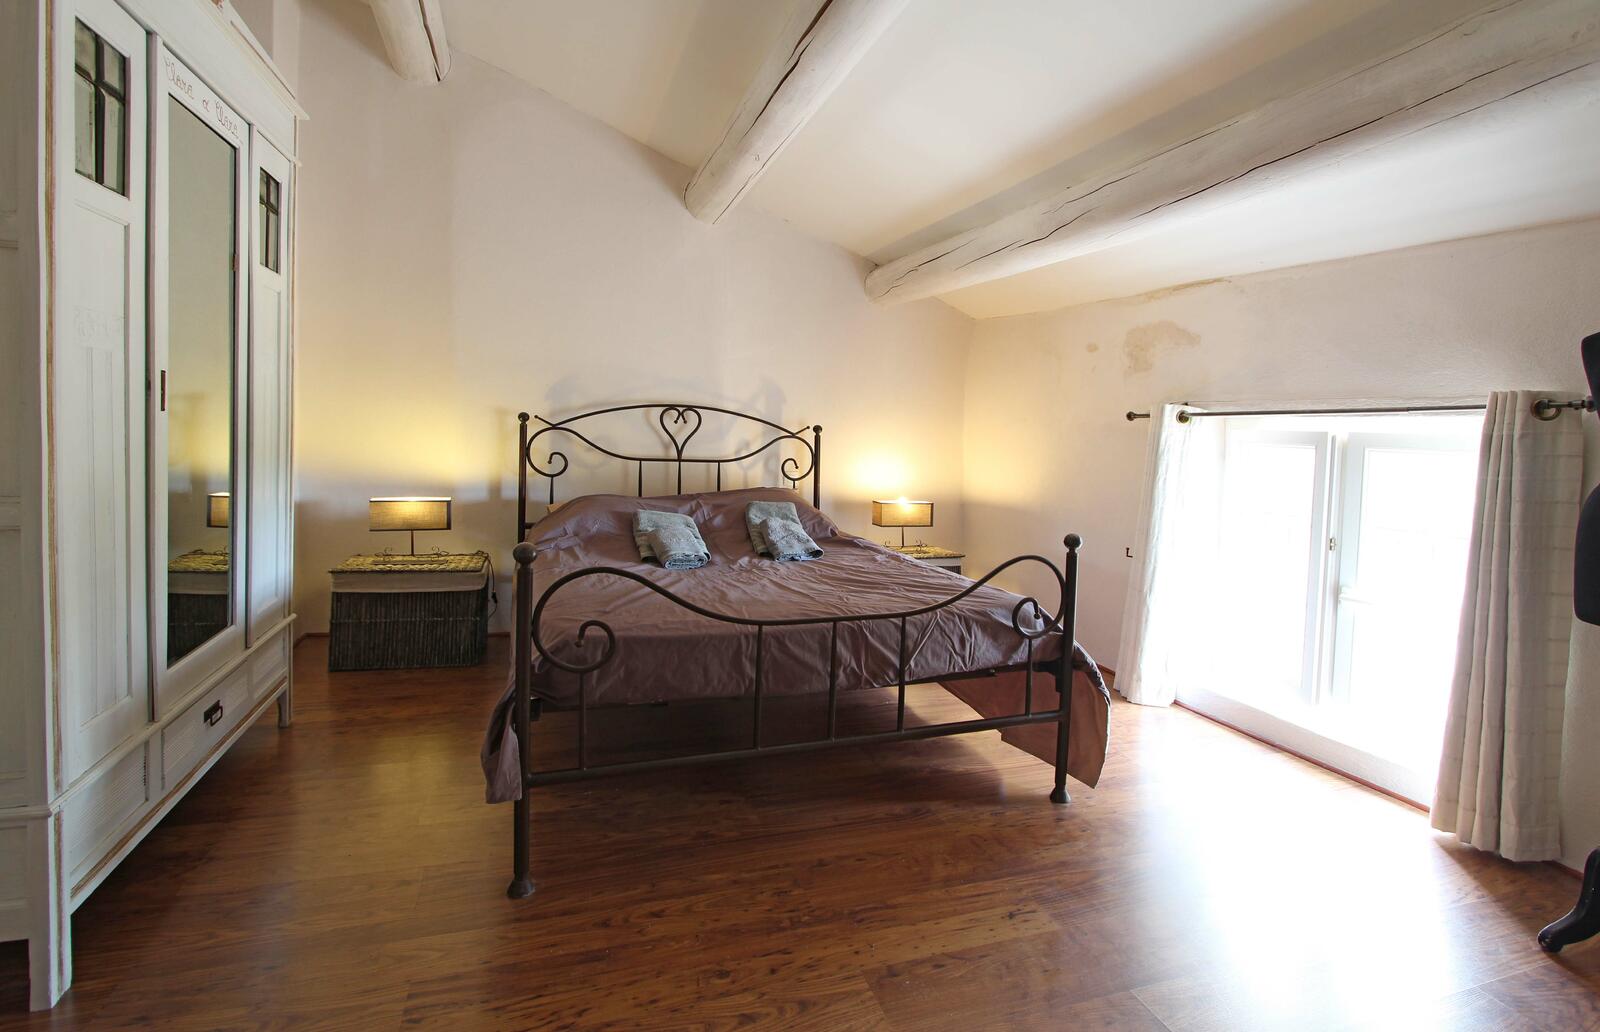 Bedroom 5 : bed 160 x 200